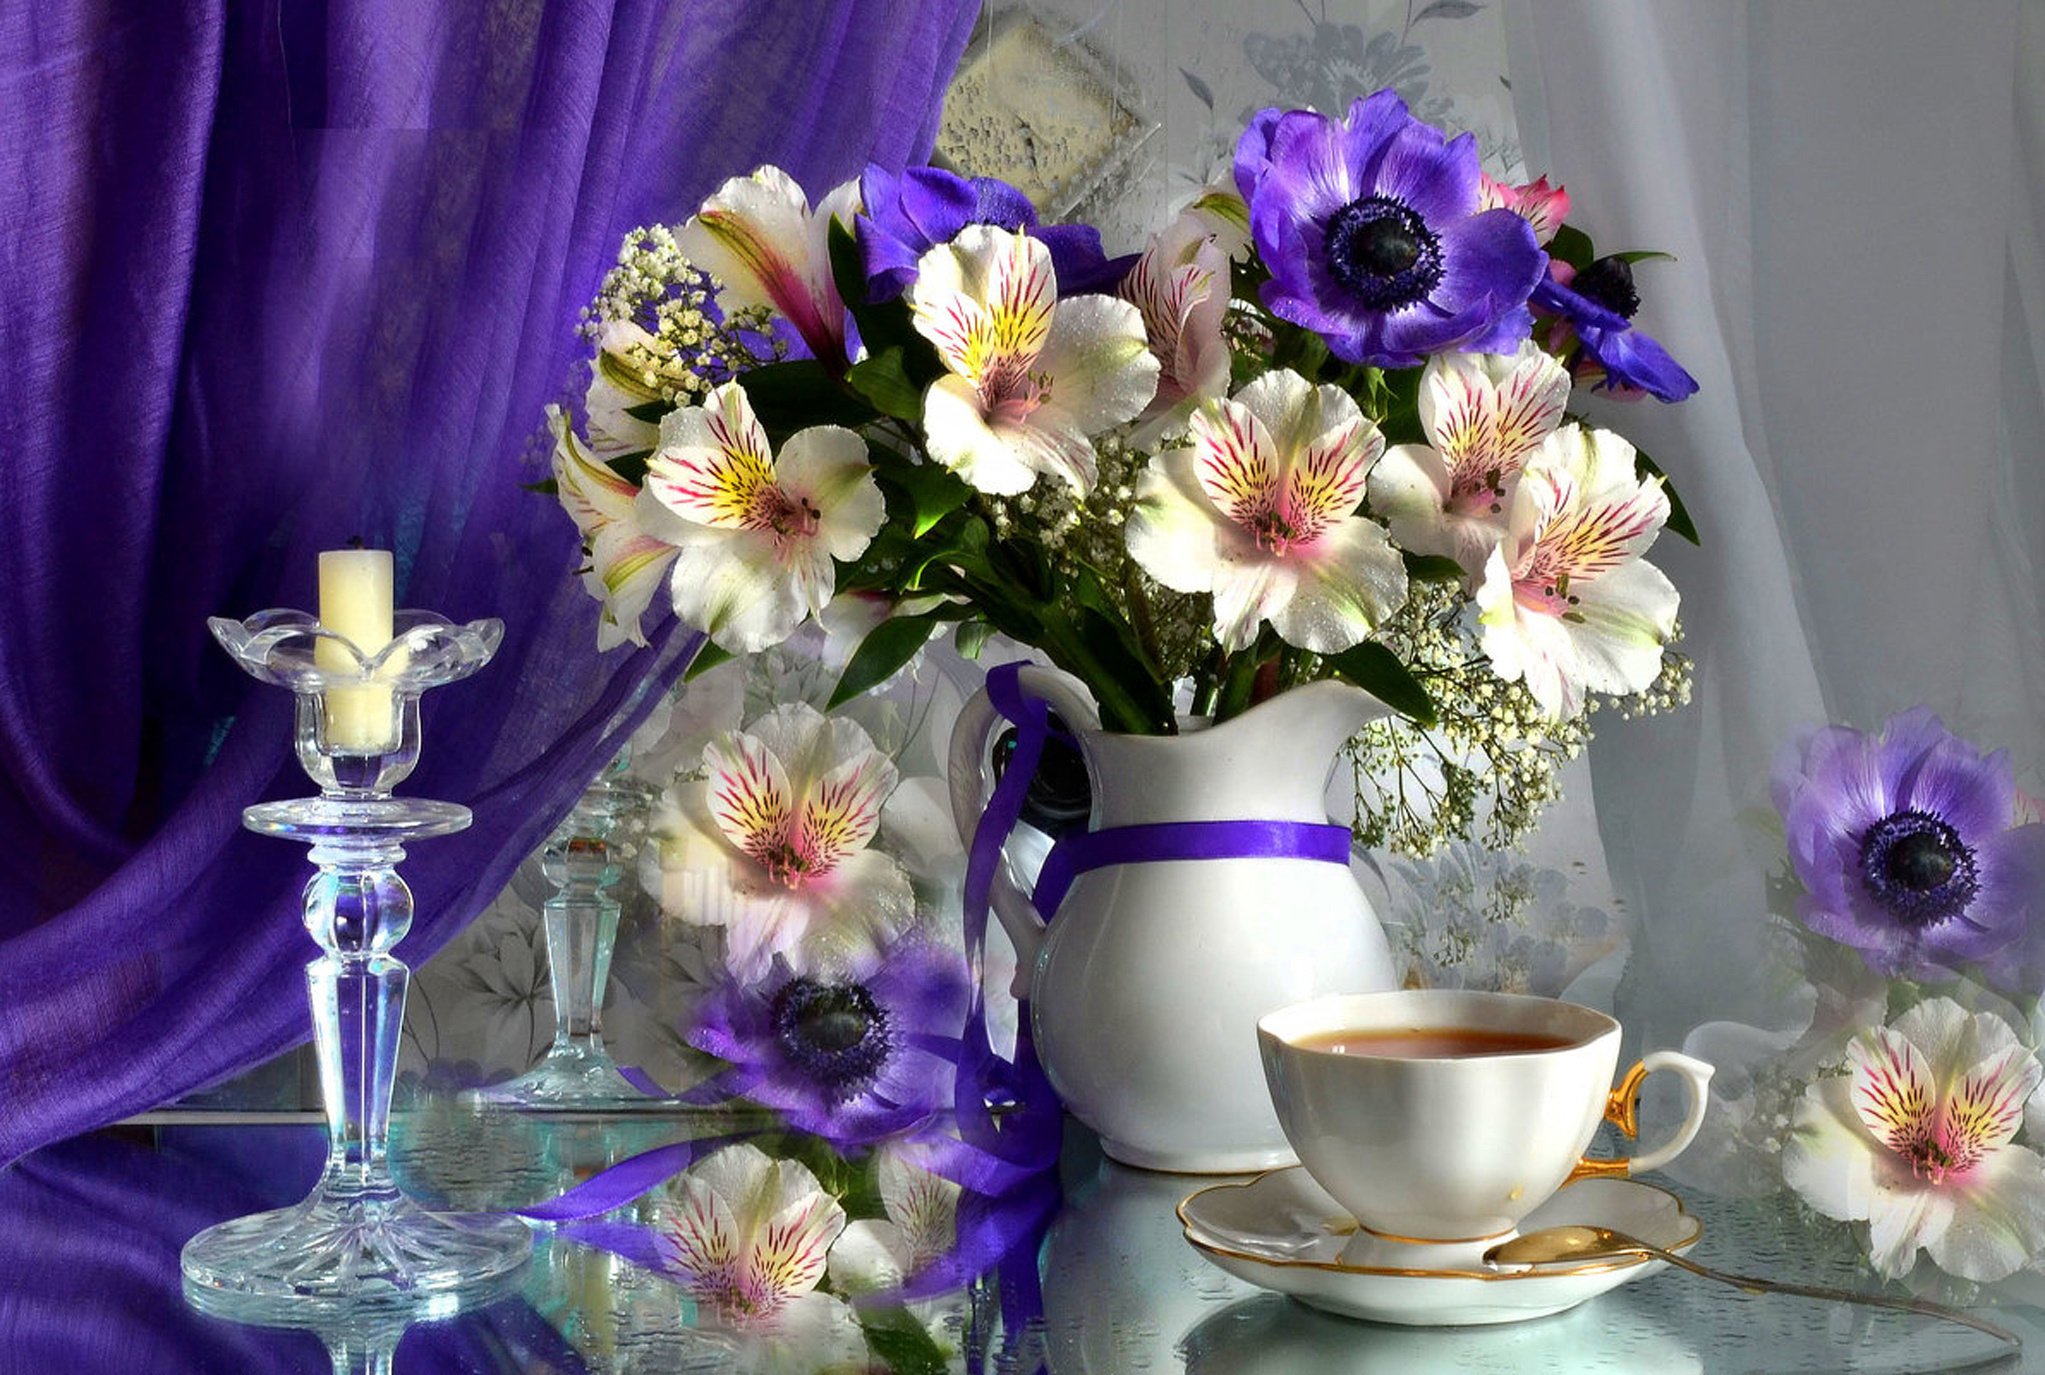 Картинка красивая с добрым вечером нежная. Доброе утро цветы. Натюрморт с цветами. Красивые цветы в вазах. Нежный натюрморт.